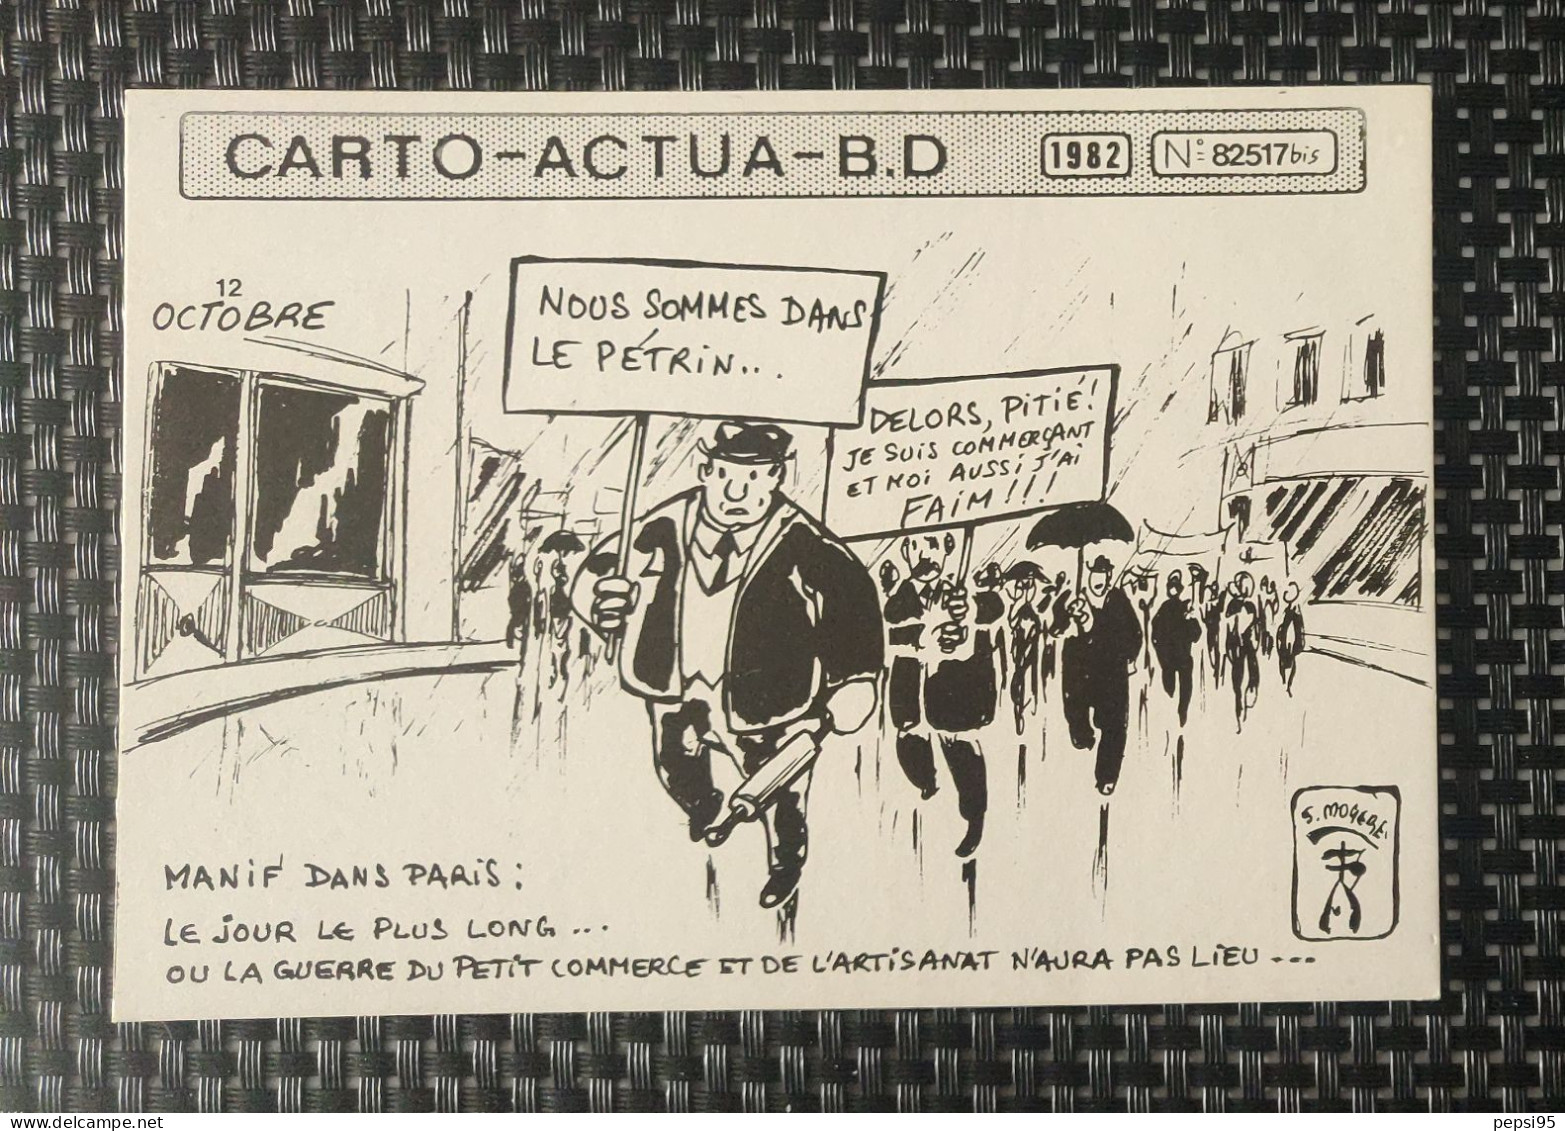 (CPI03) Carte Postale CARTO ACTUA B D N° 82517bis - 1982 - S. MOGERE - Nous Sommes Dans Le Pétrin - Comics